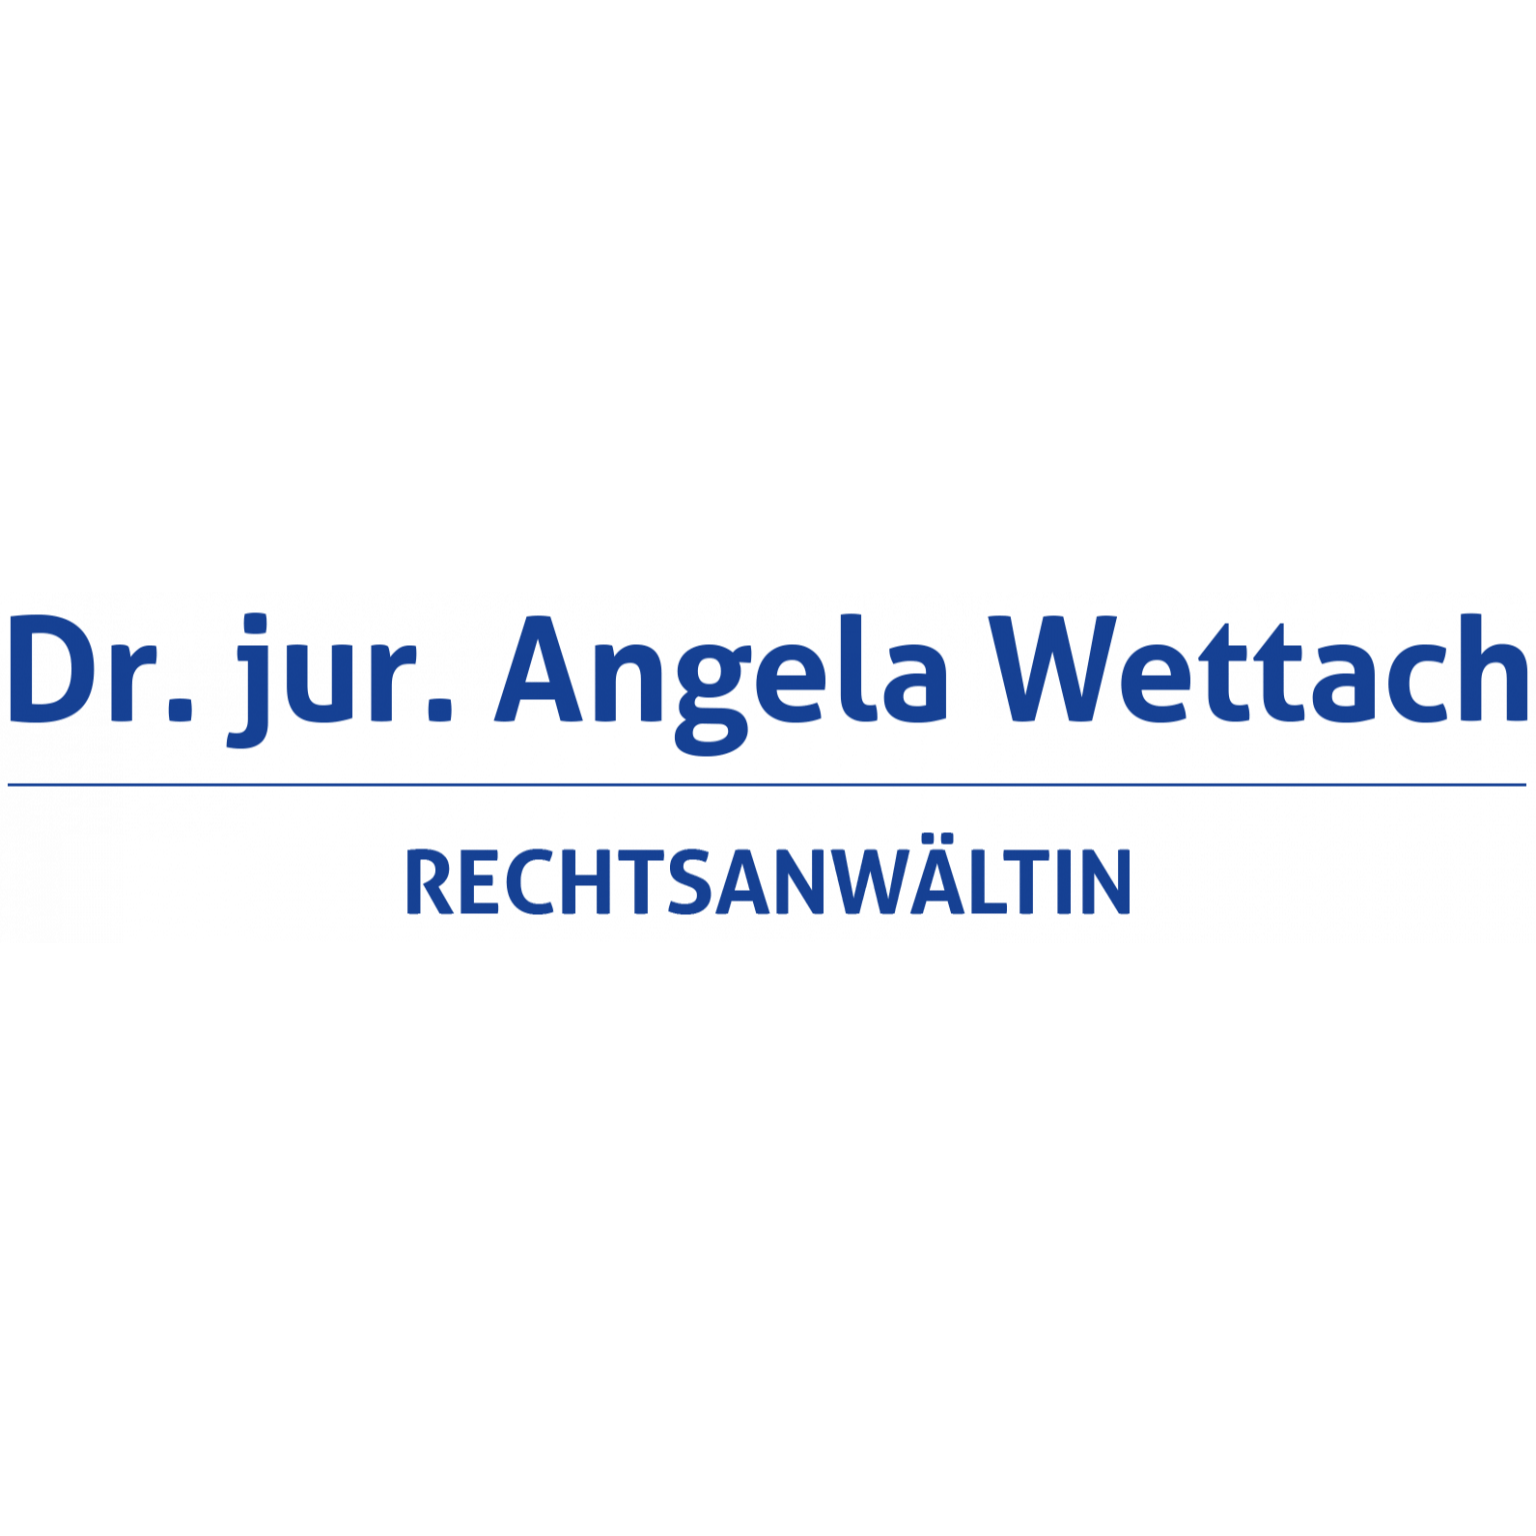 Angela Wettach Rechtsanwältin Naumburg 03445 676792